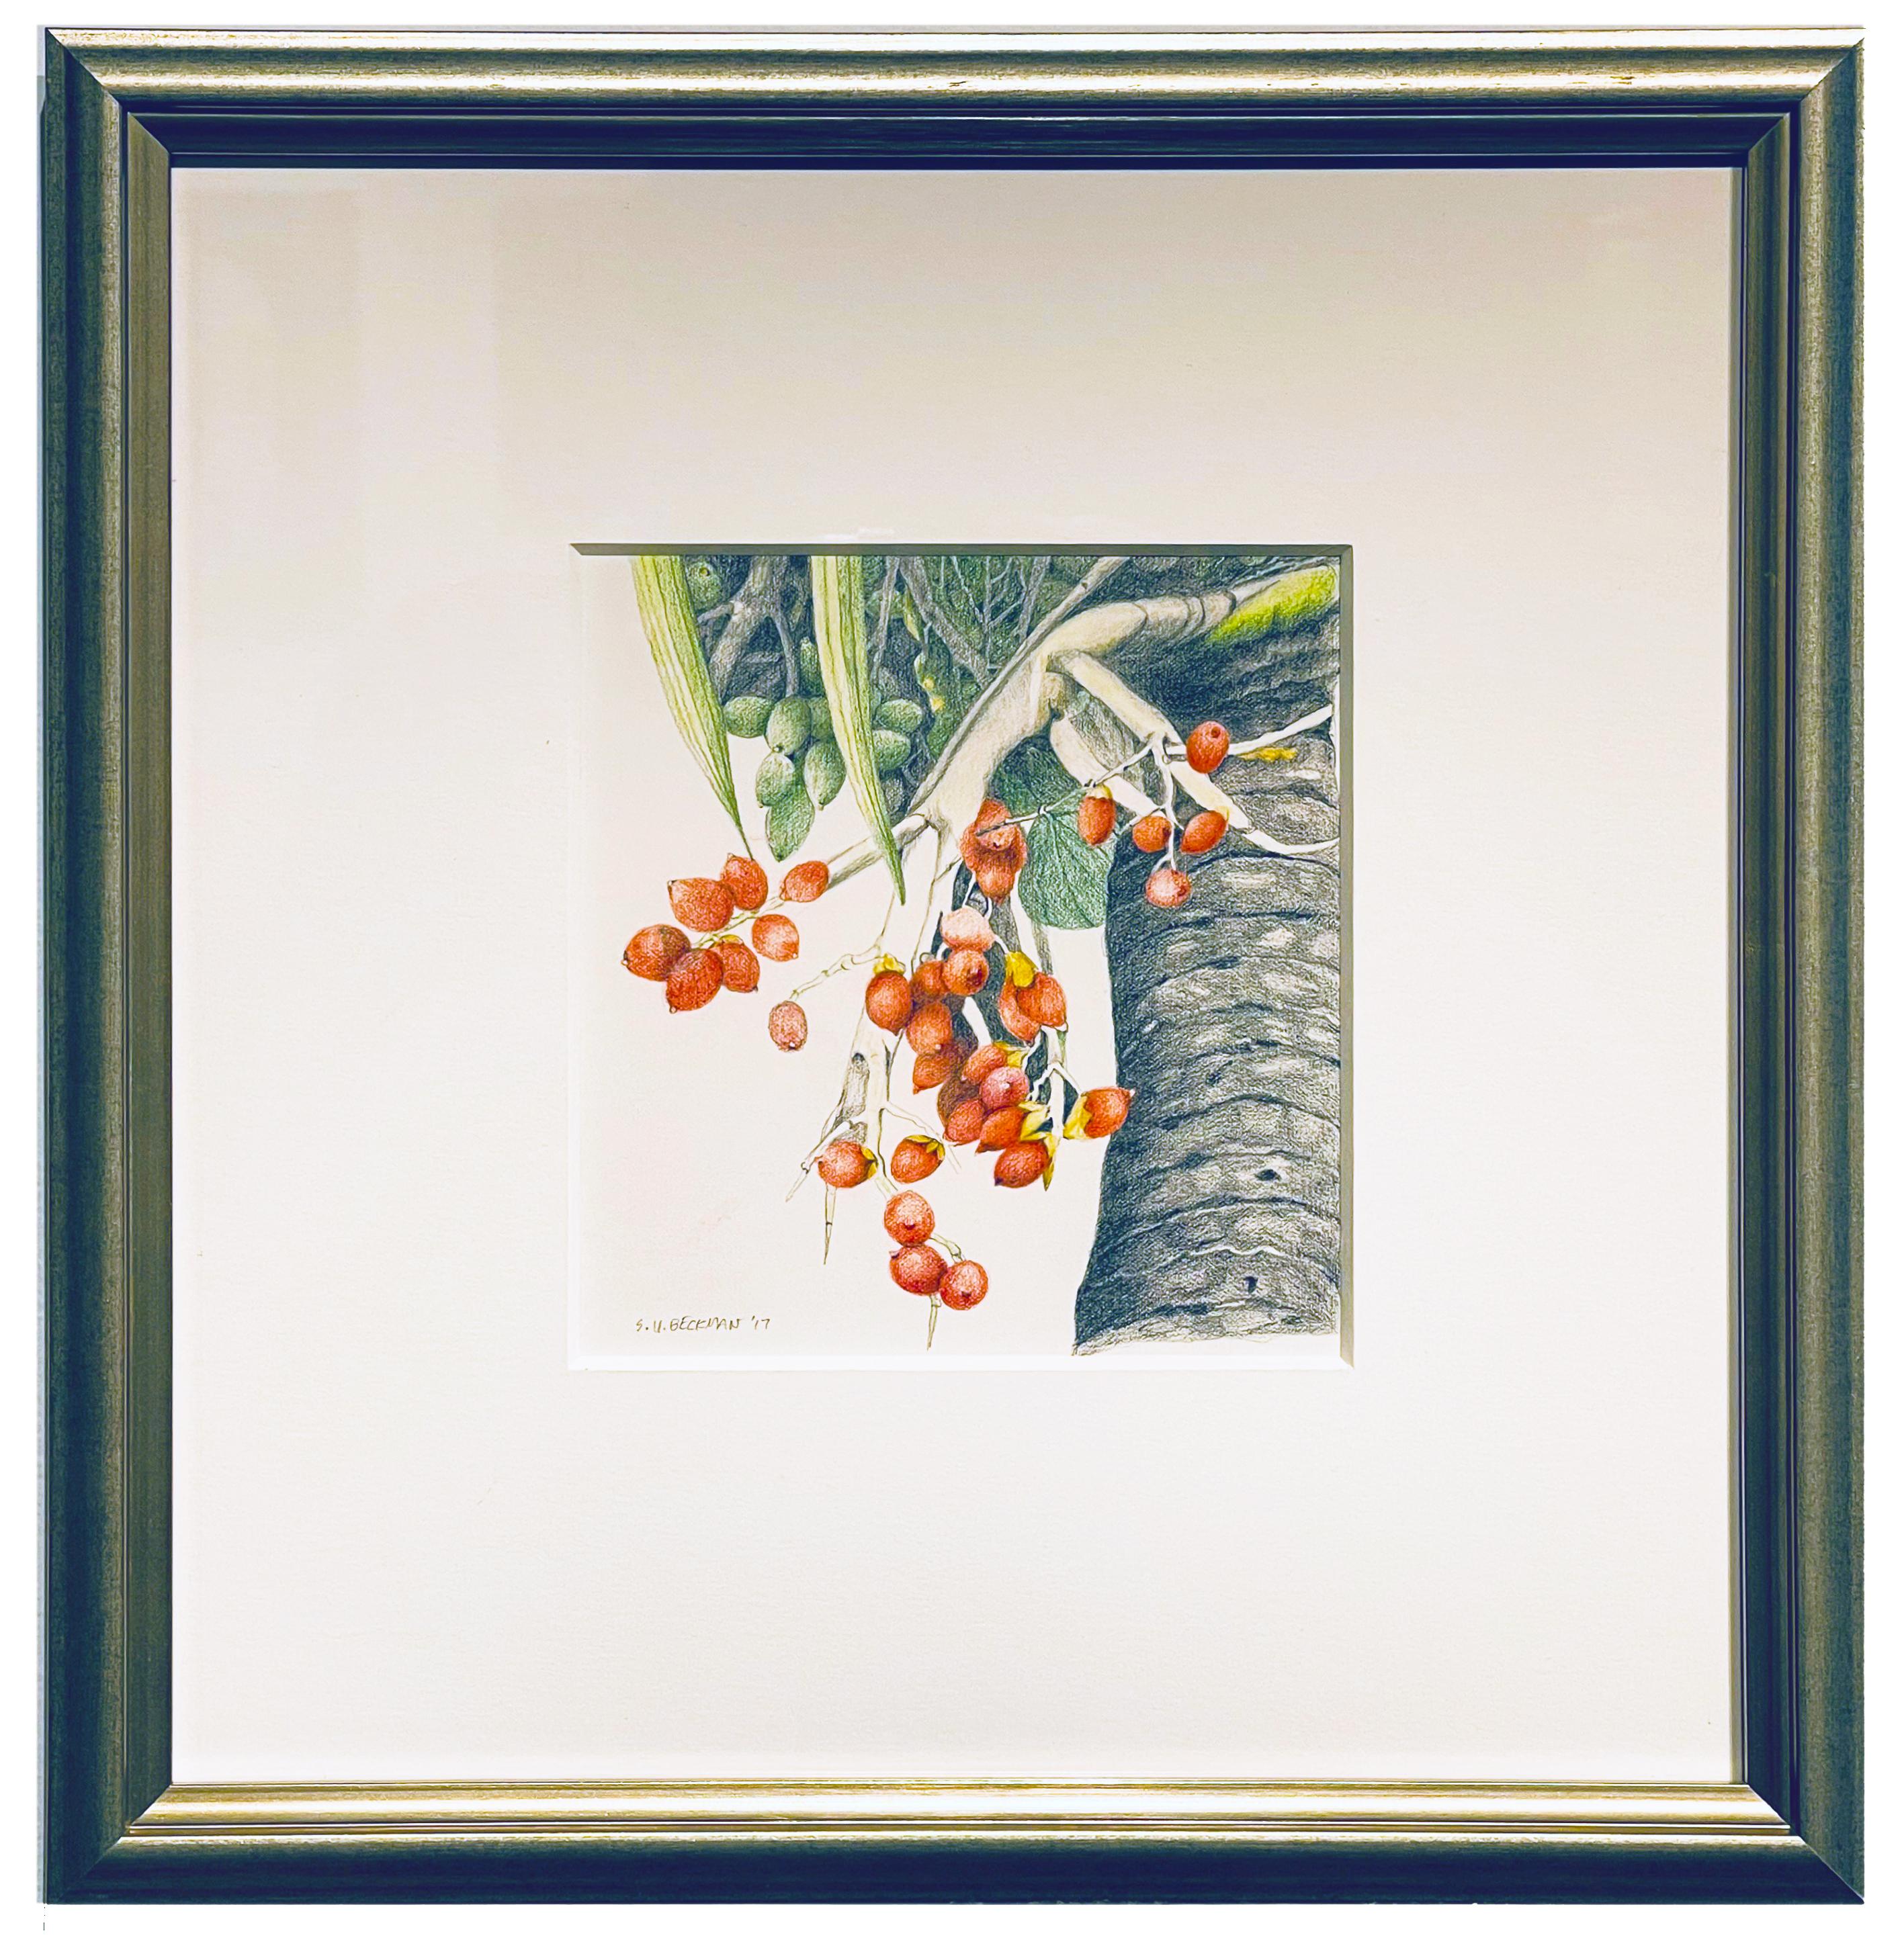 Christmas Palm, Botanische Zeichnung, farbiger Bleistift auf Papier, gerahmt in Silber